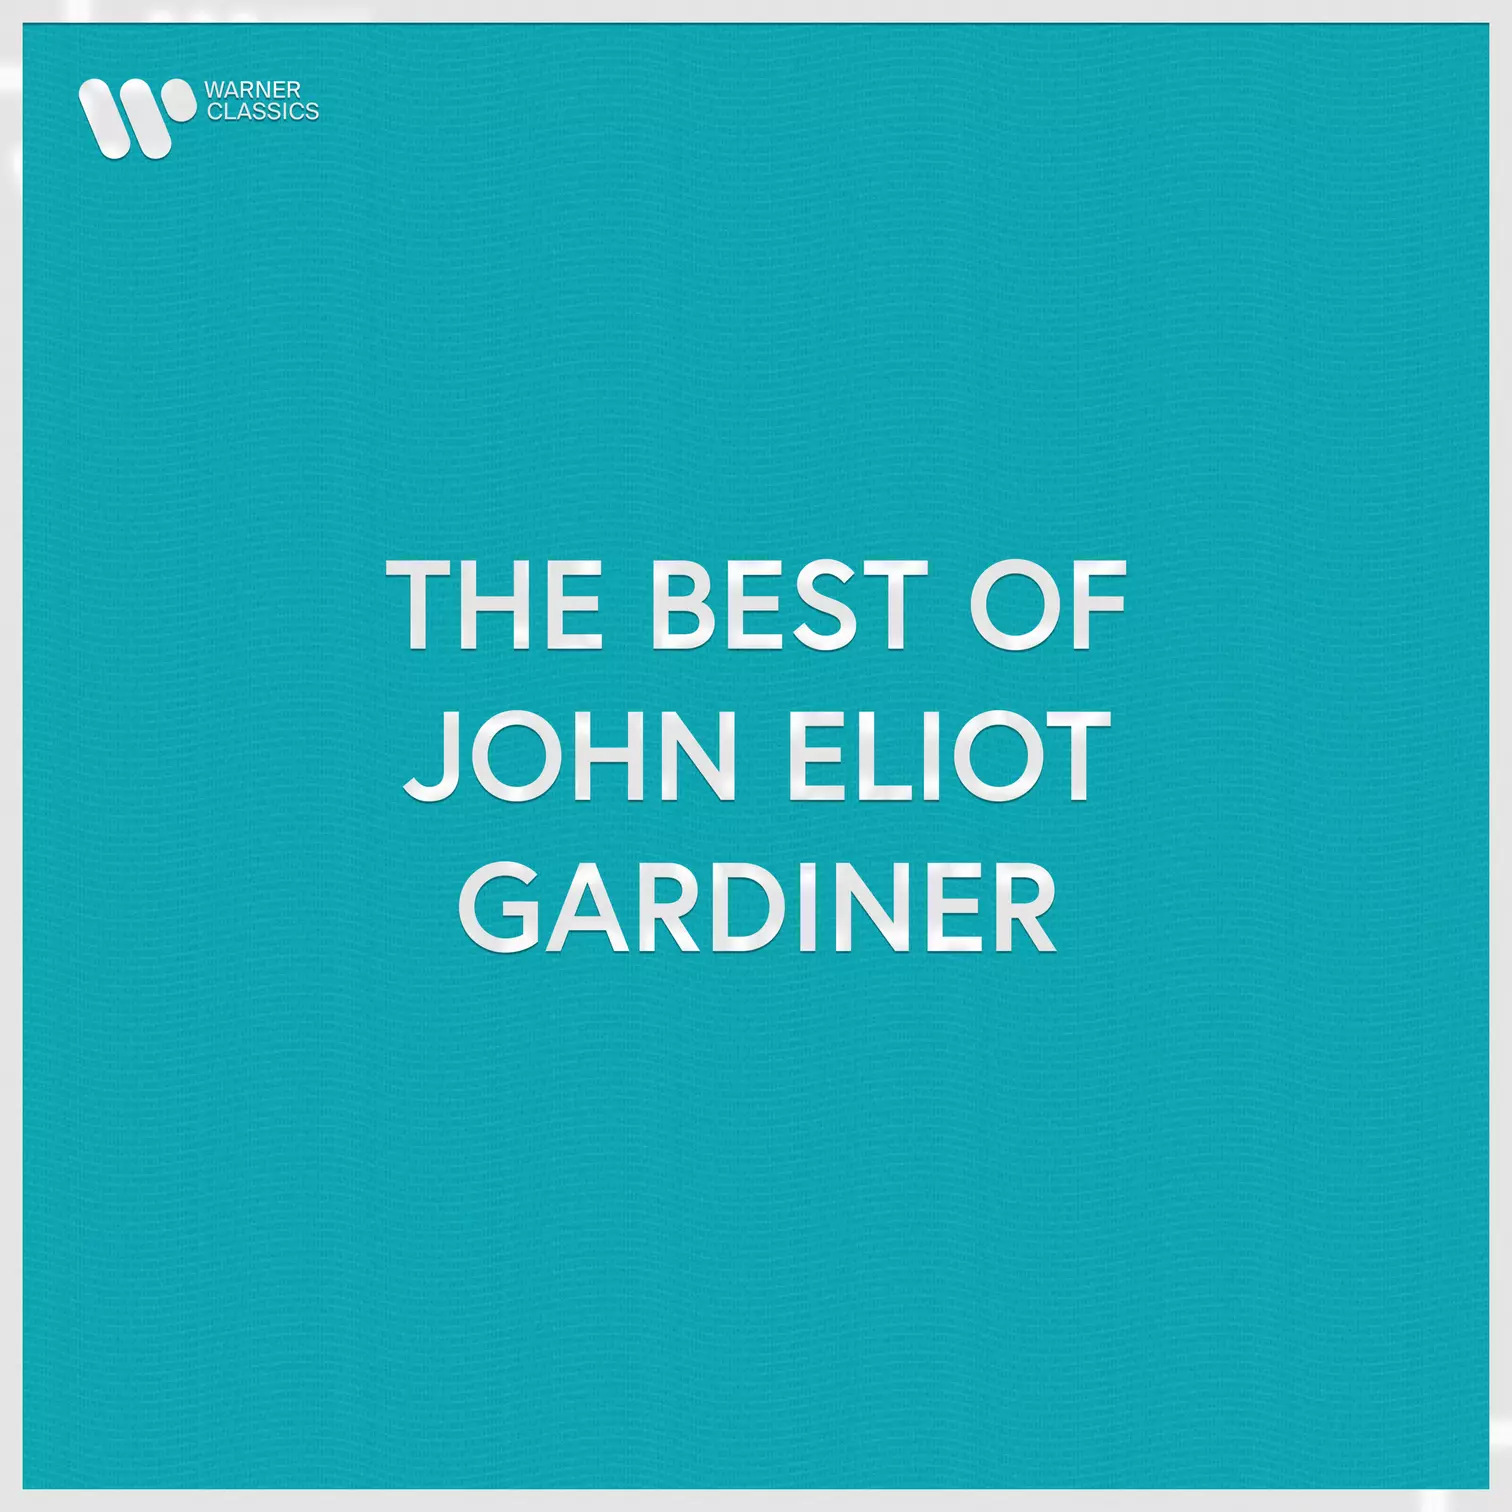 The Best of John Eliot Gardiner